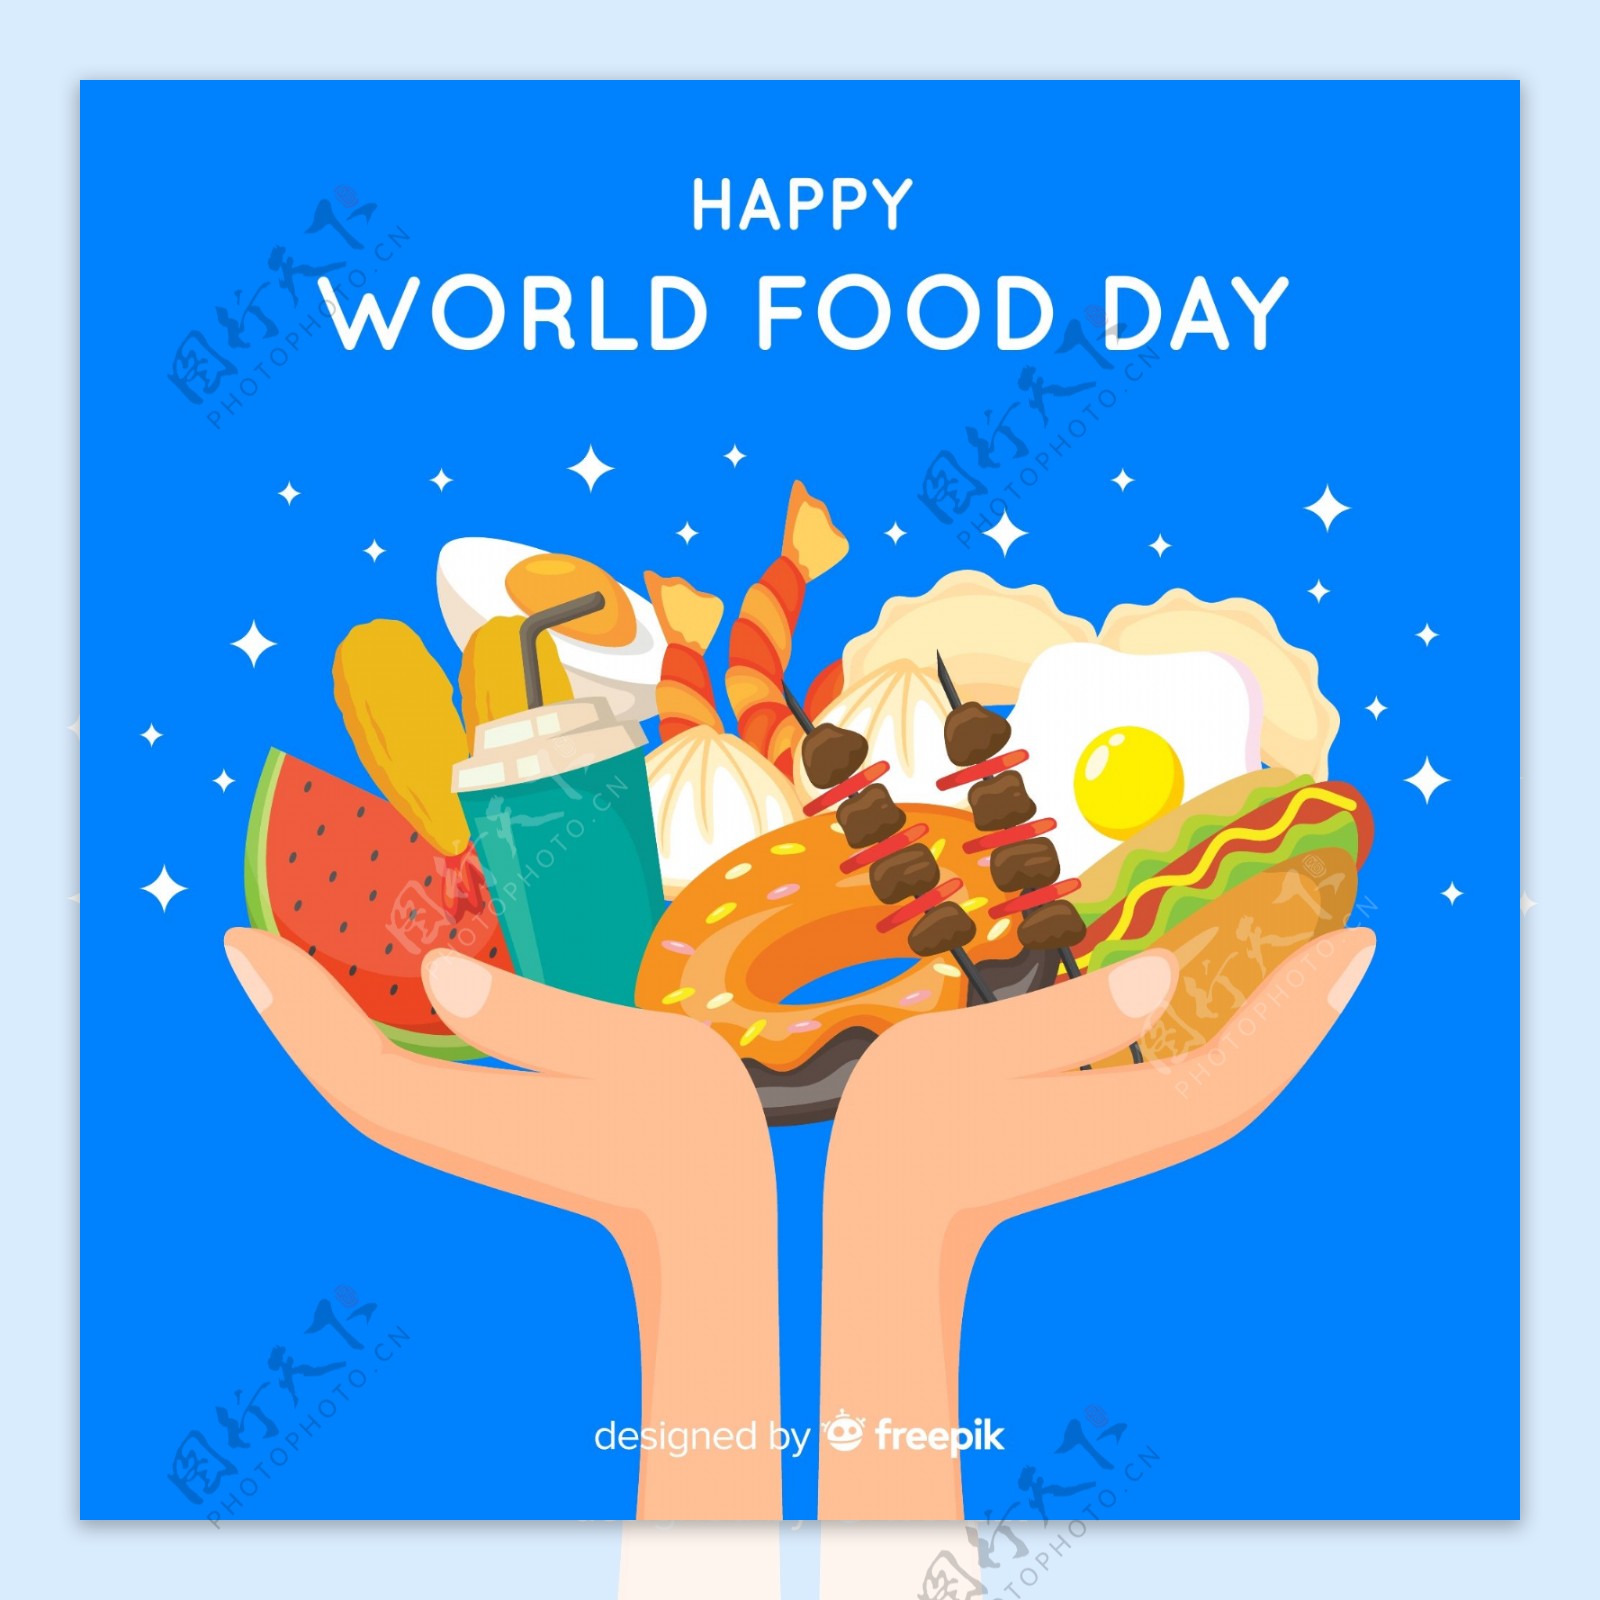 世界粮食日捧起食物